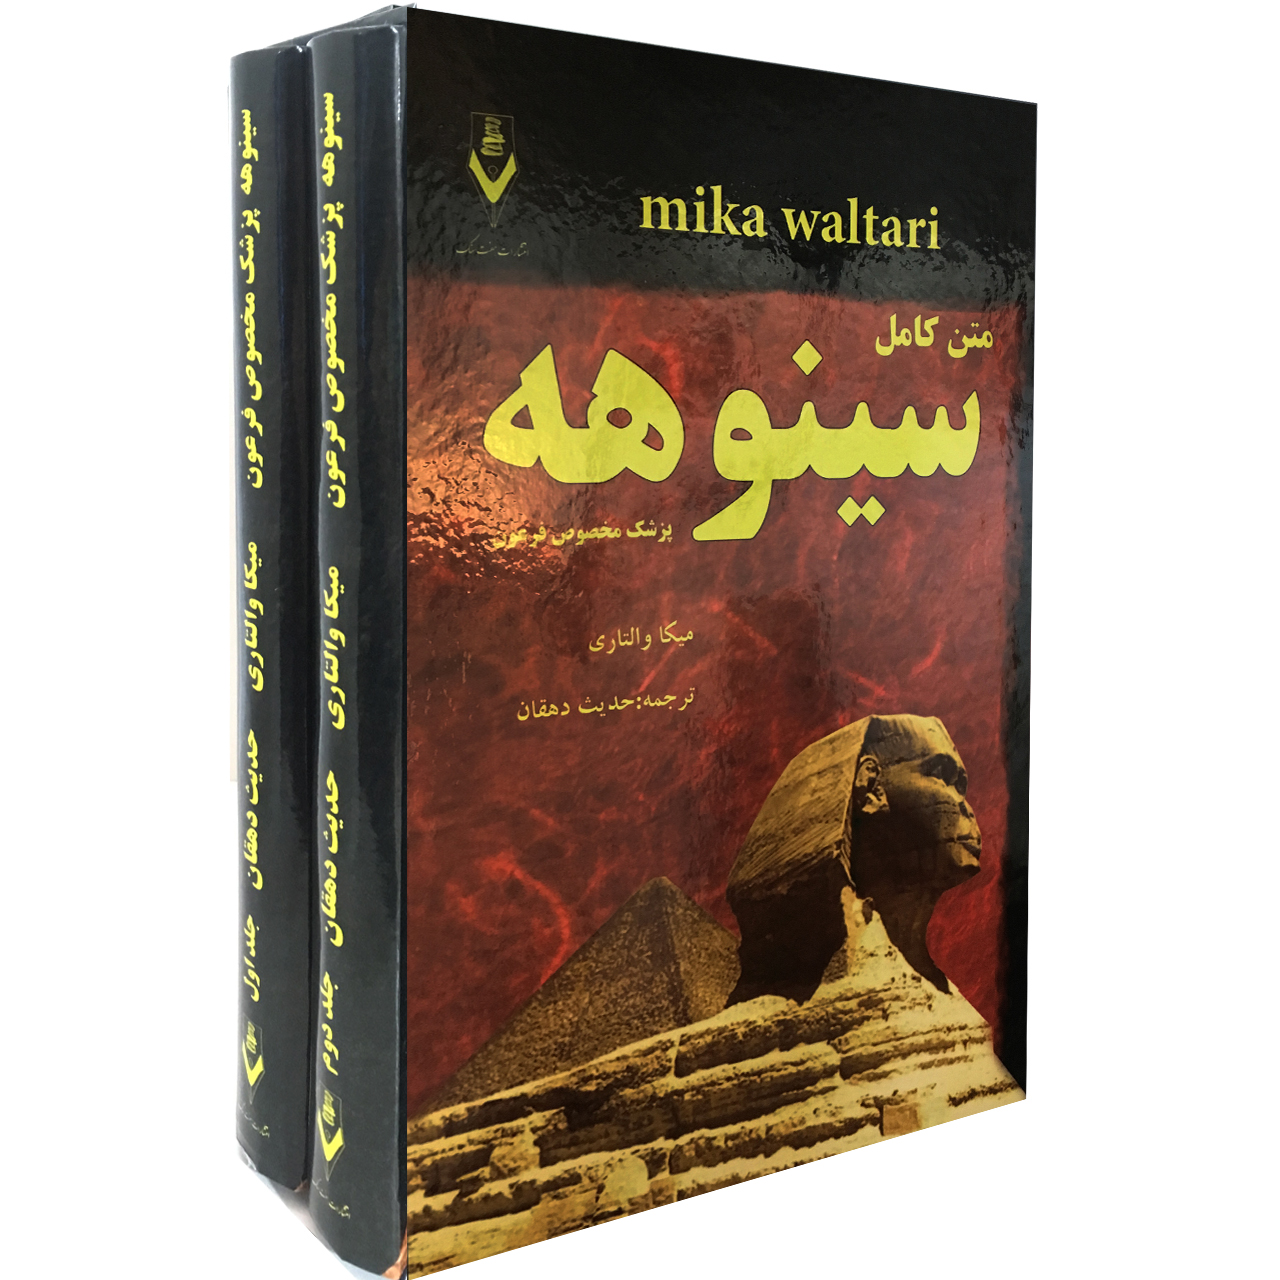 آنباکس کتاب سینوهه پزشک مخصوص فرعون اثر میکا والتاری نشر هفت سنگ در تاریخ ۰۲ آبان ۱۳۹۹